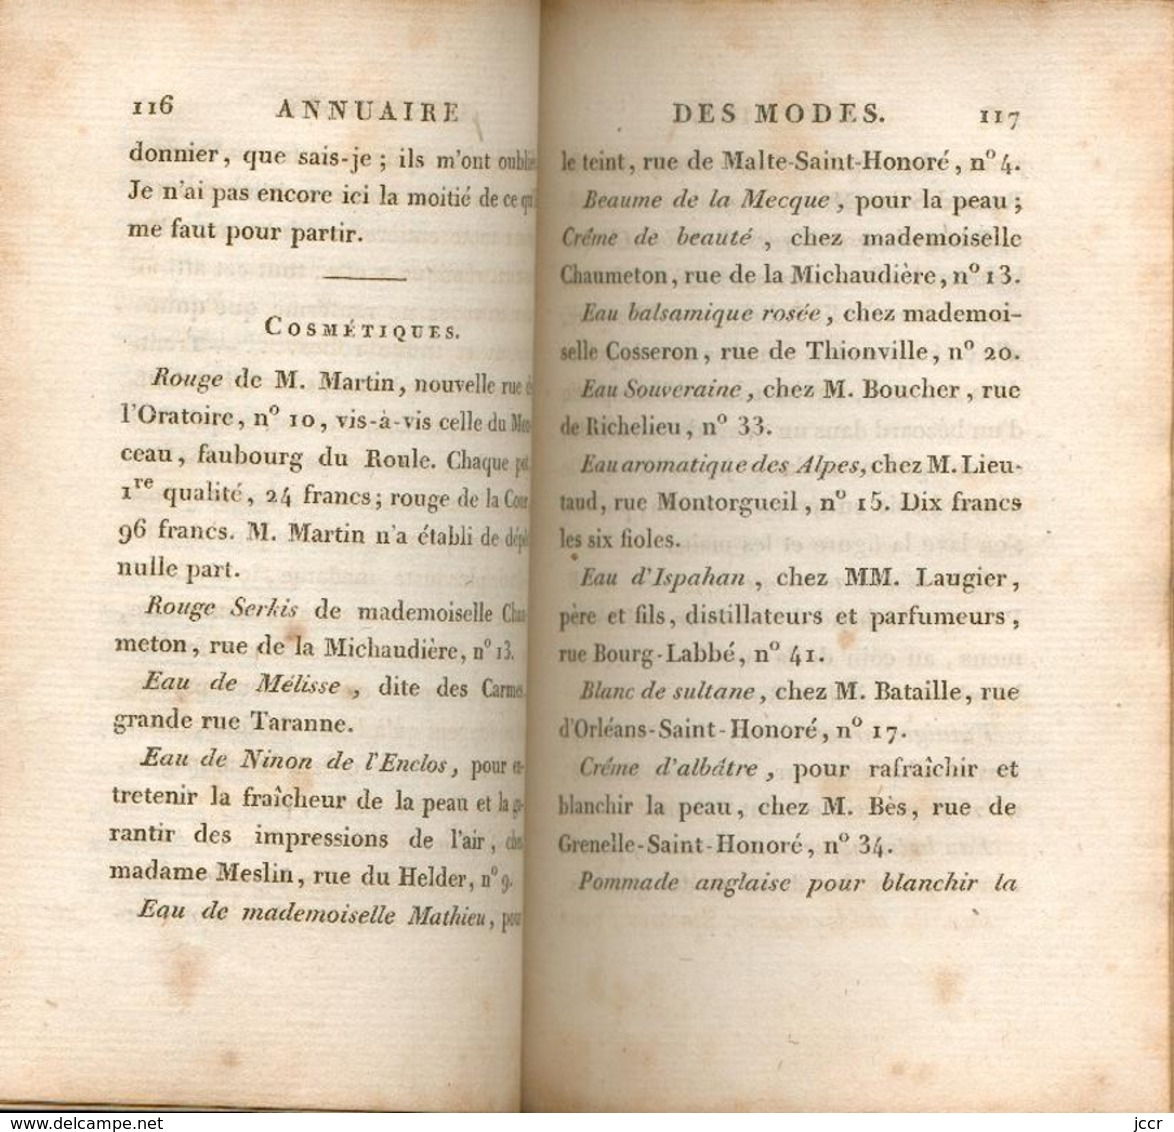 Annuaire des Modes de Paris - Orné de douze gravures - Première Année - 1814